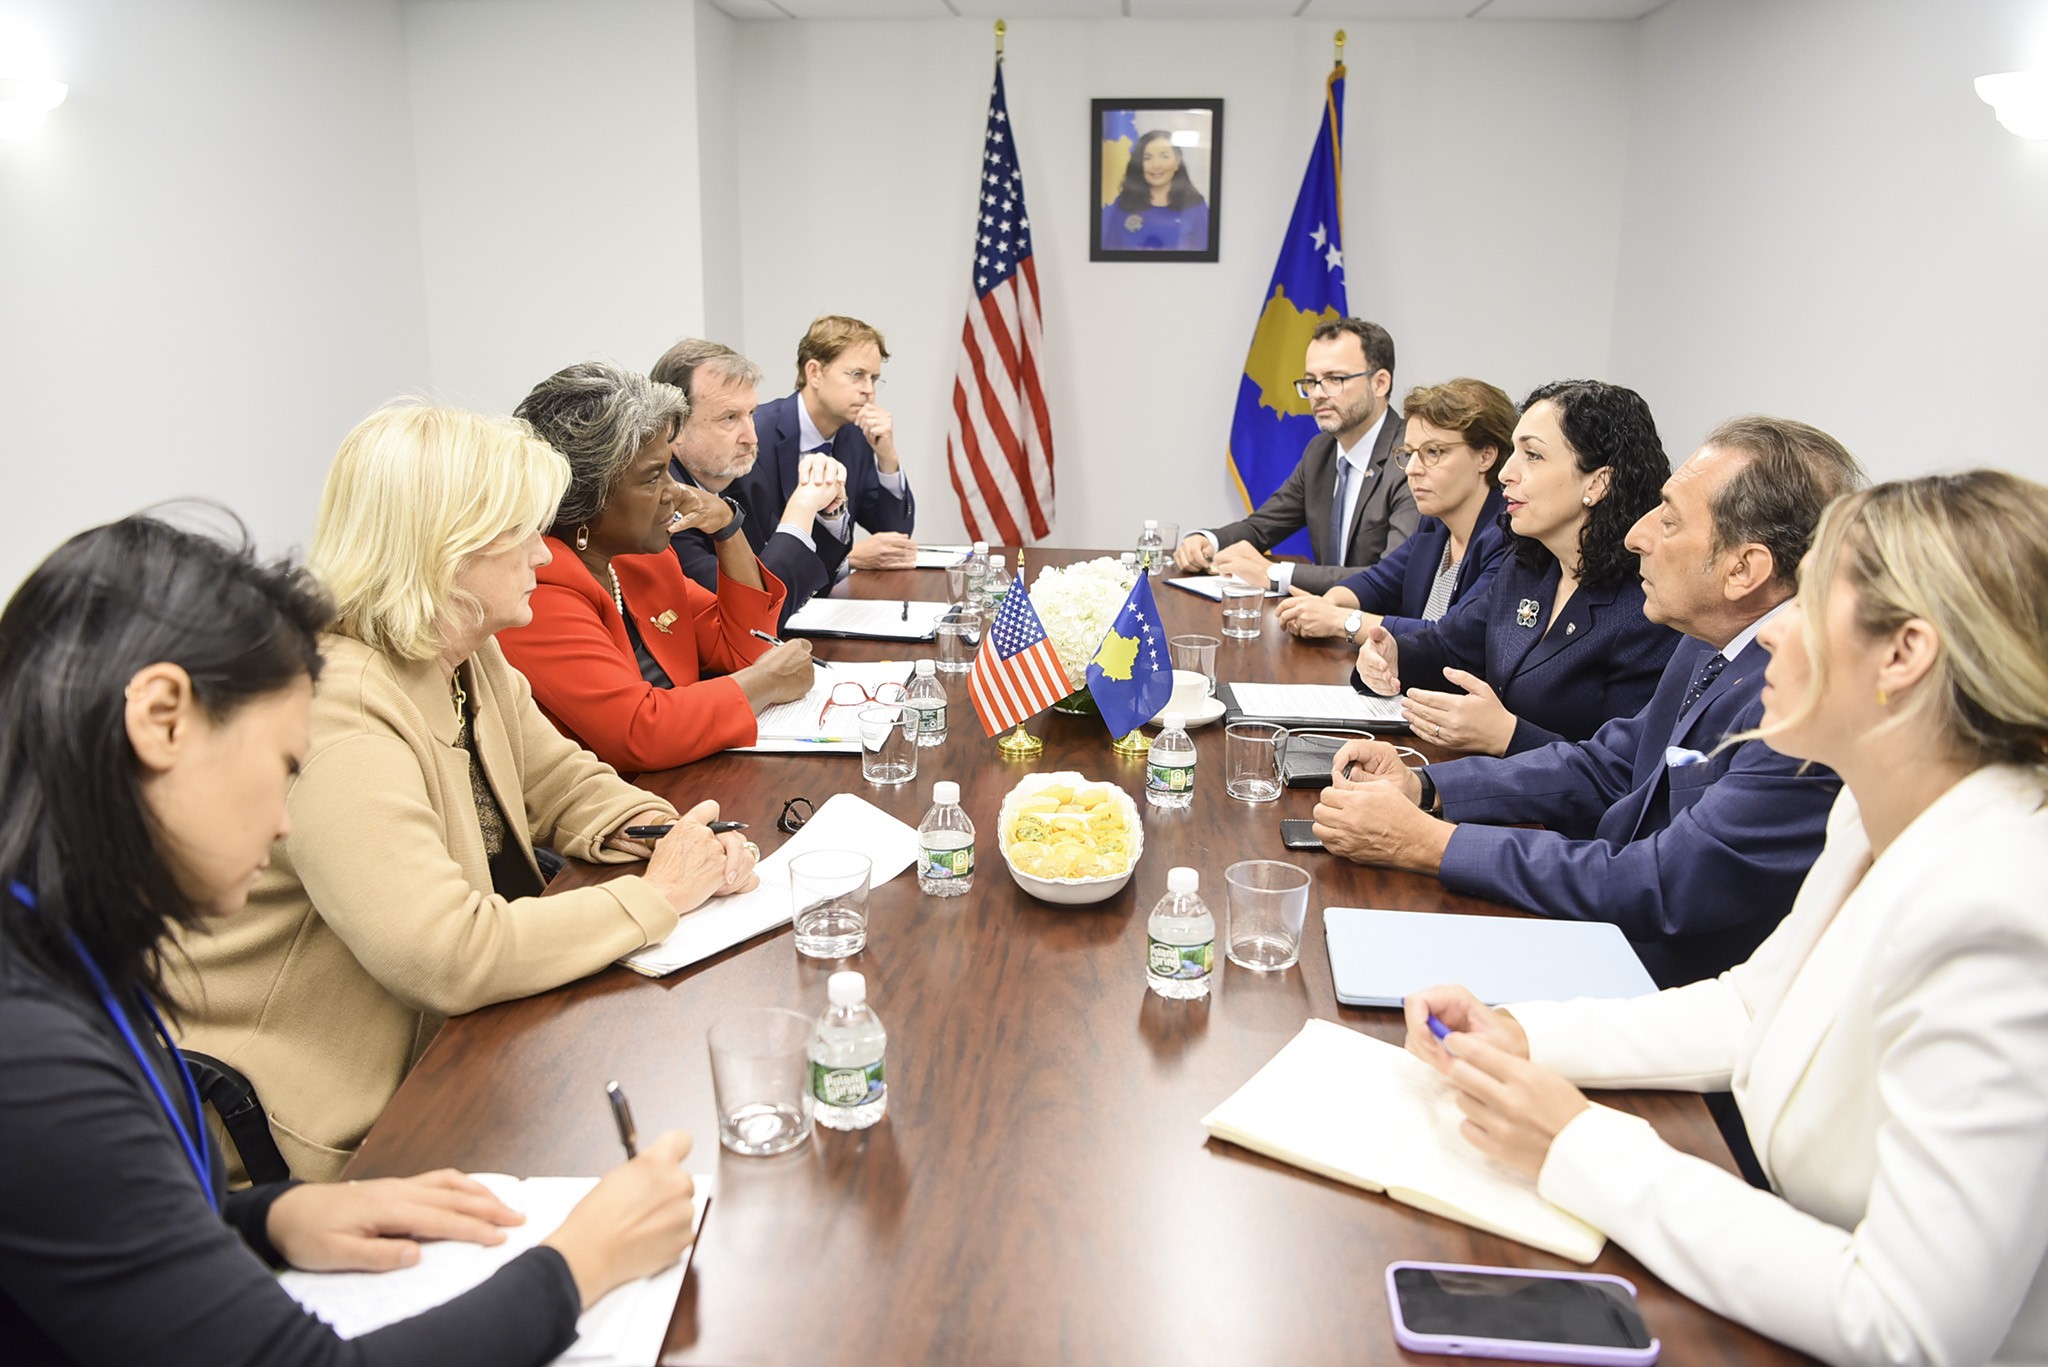 Presidentja Osmani takoi Linda Thomas-Greenfield, shefe e misionit të SHBA-ve në OKB